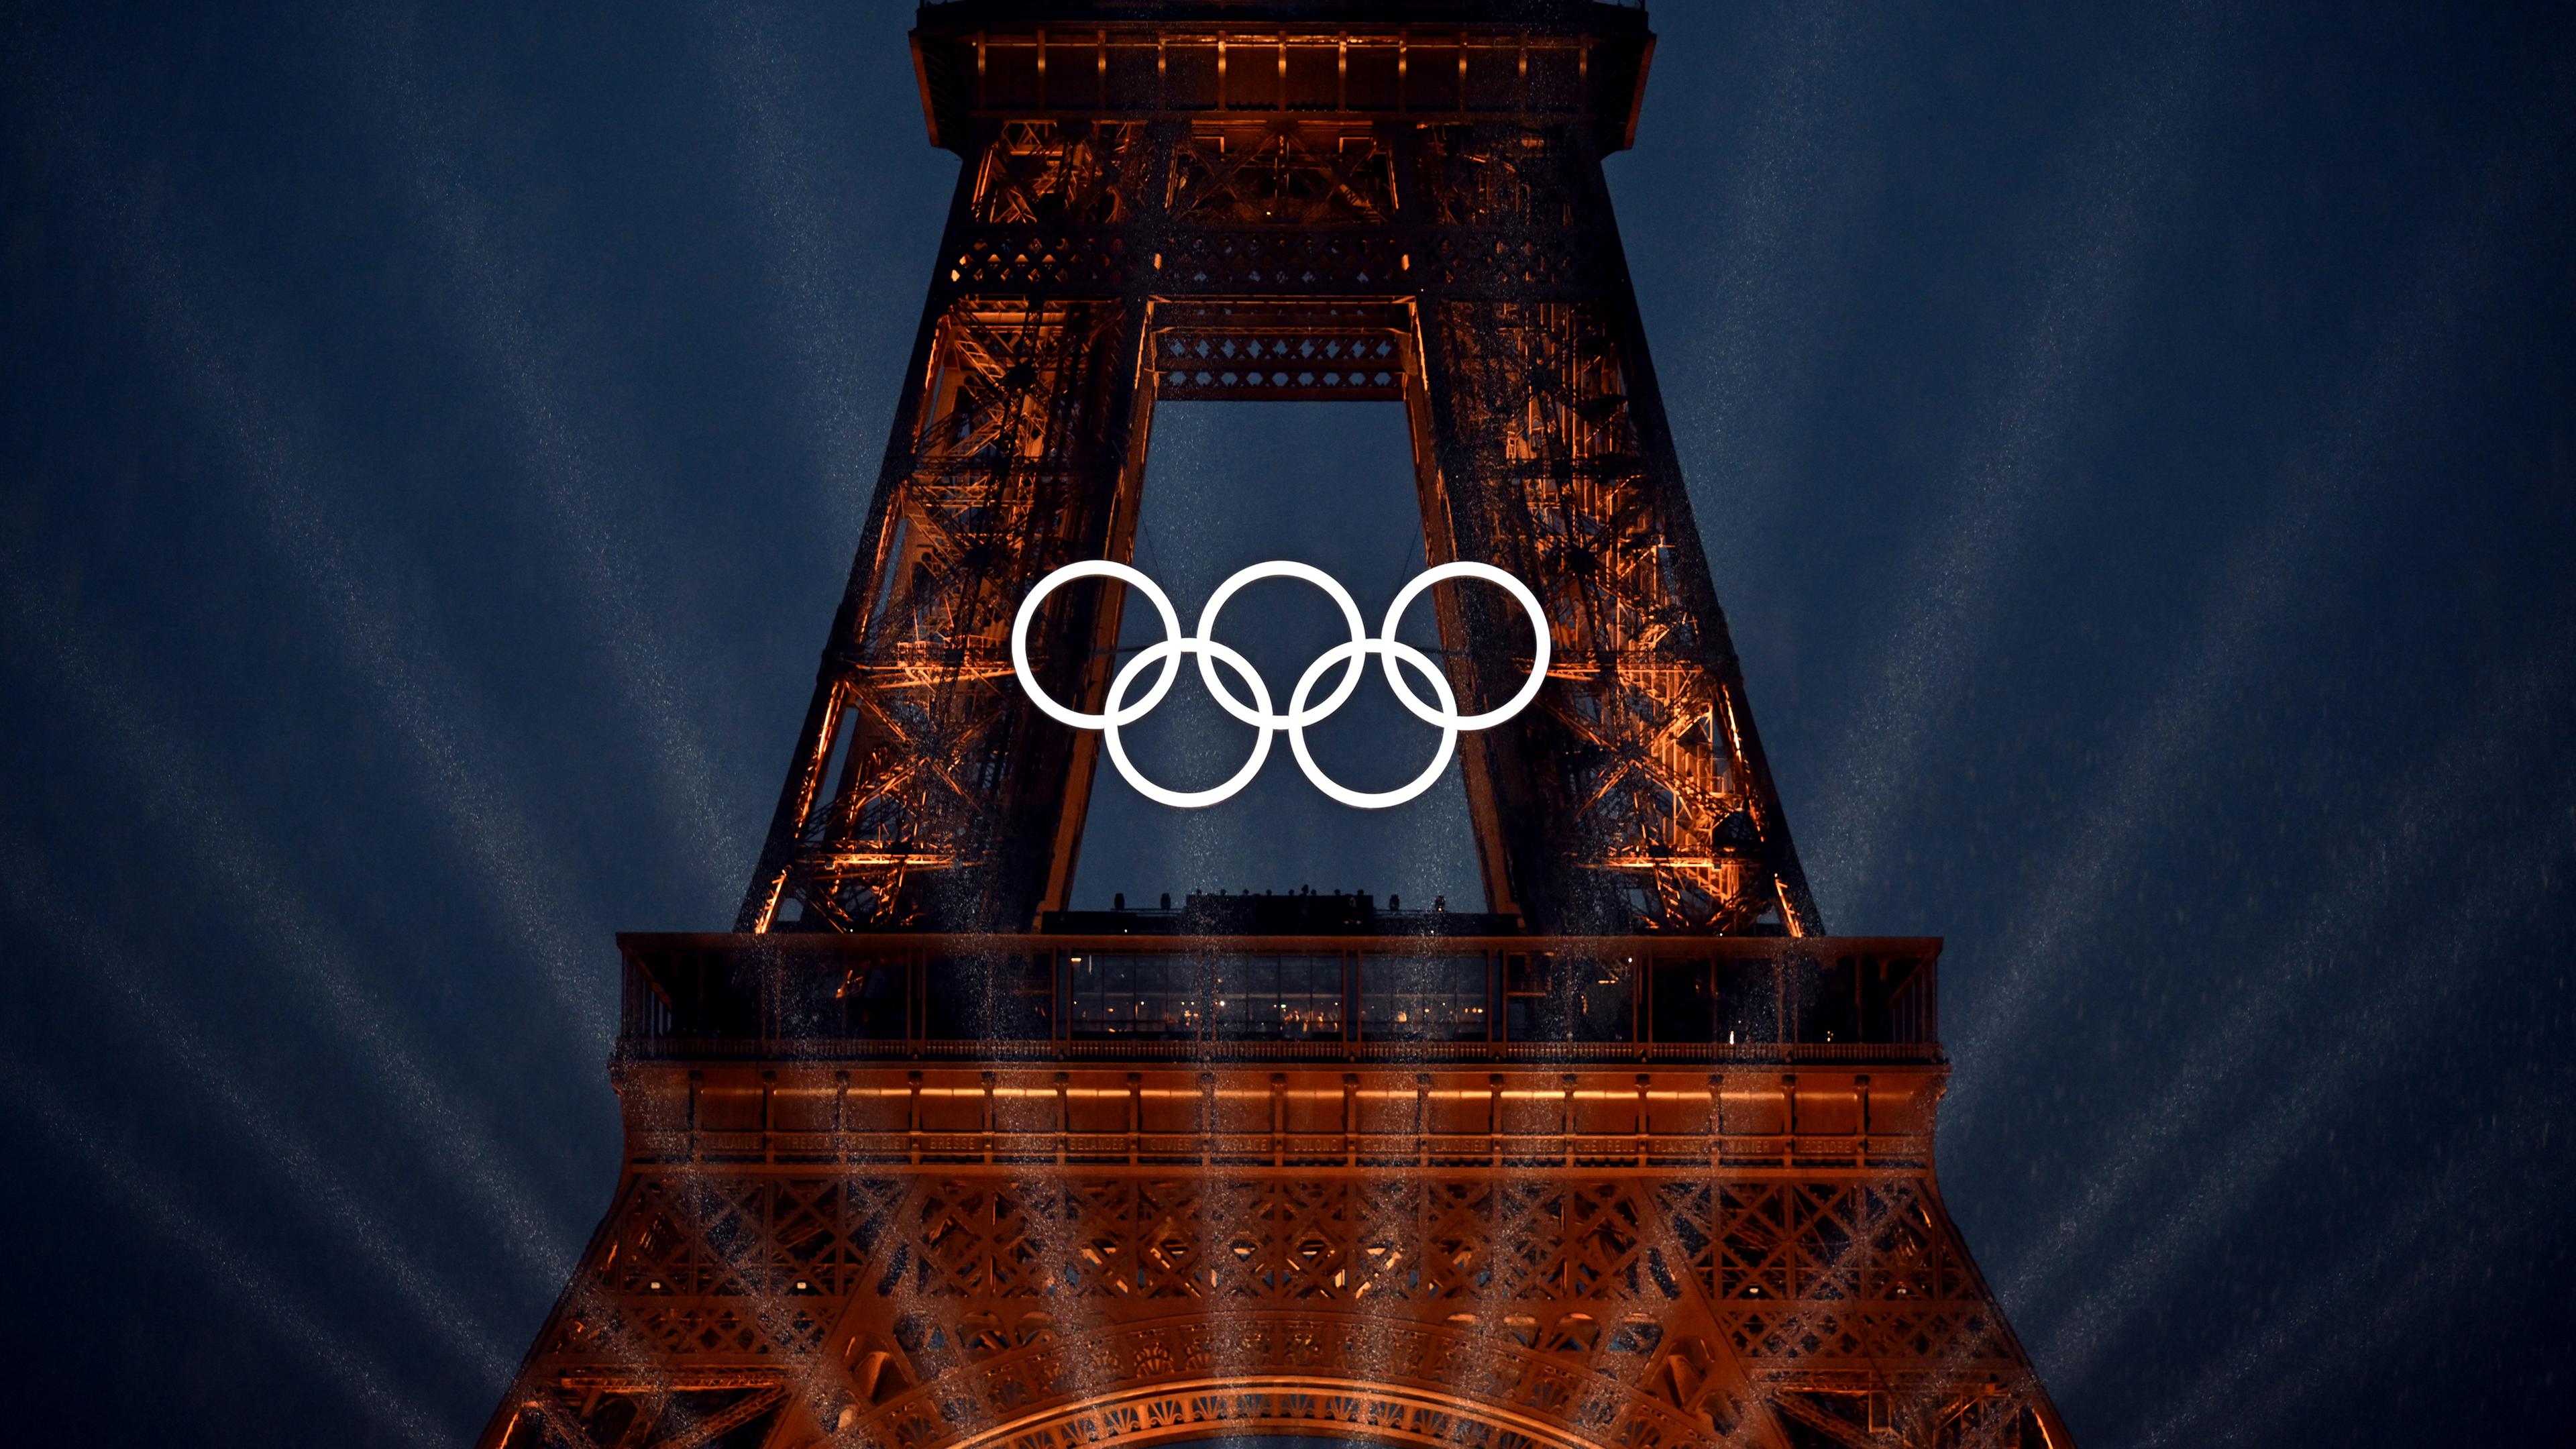 Frankreich, Paris: Ein Blick auf den Eiffelturm und die Olympischen Ringe während der Eröffnungsfeier